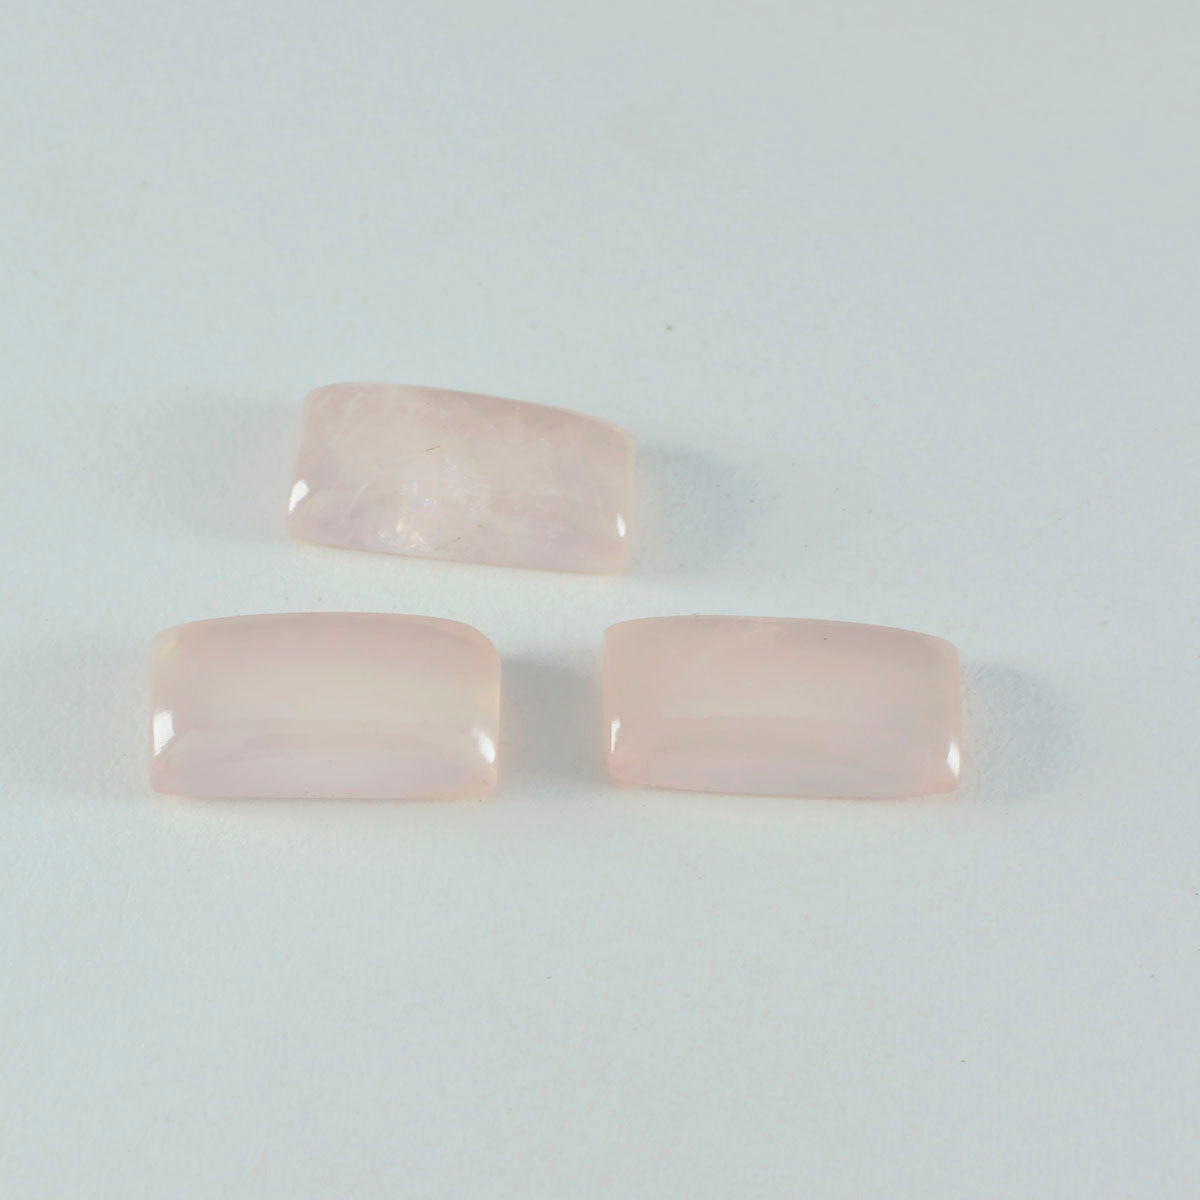 riyogems 1 pz cabochon di quarzo rosa rosa 7x14 mm forma baguette, una pietra sciolta di qualità